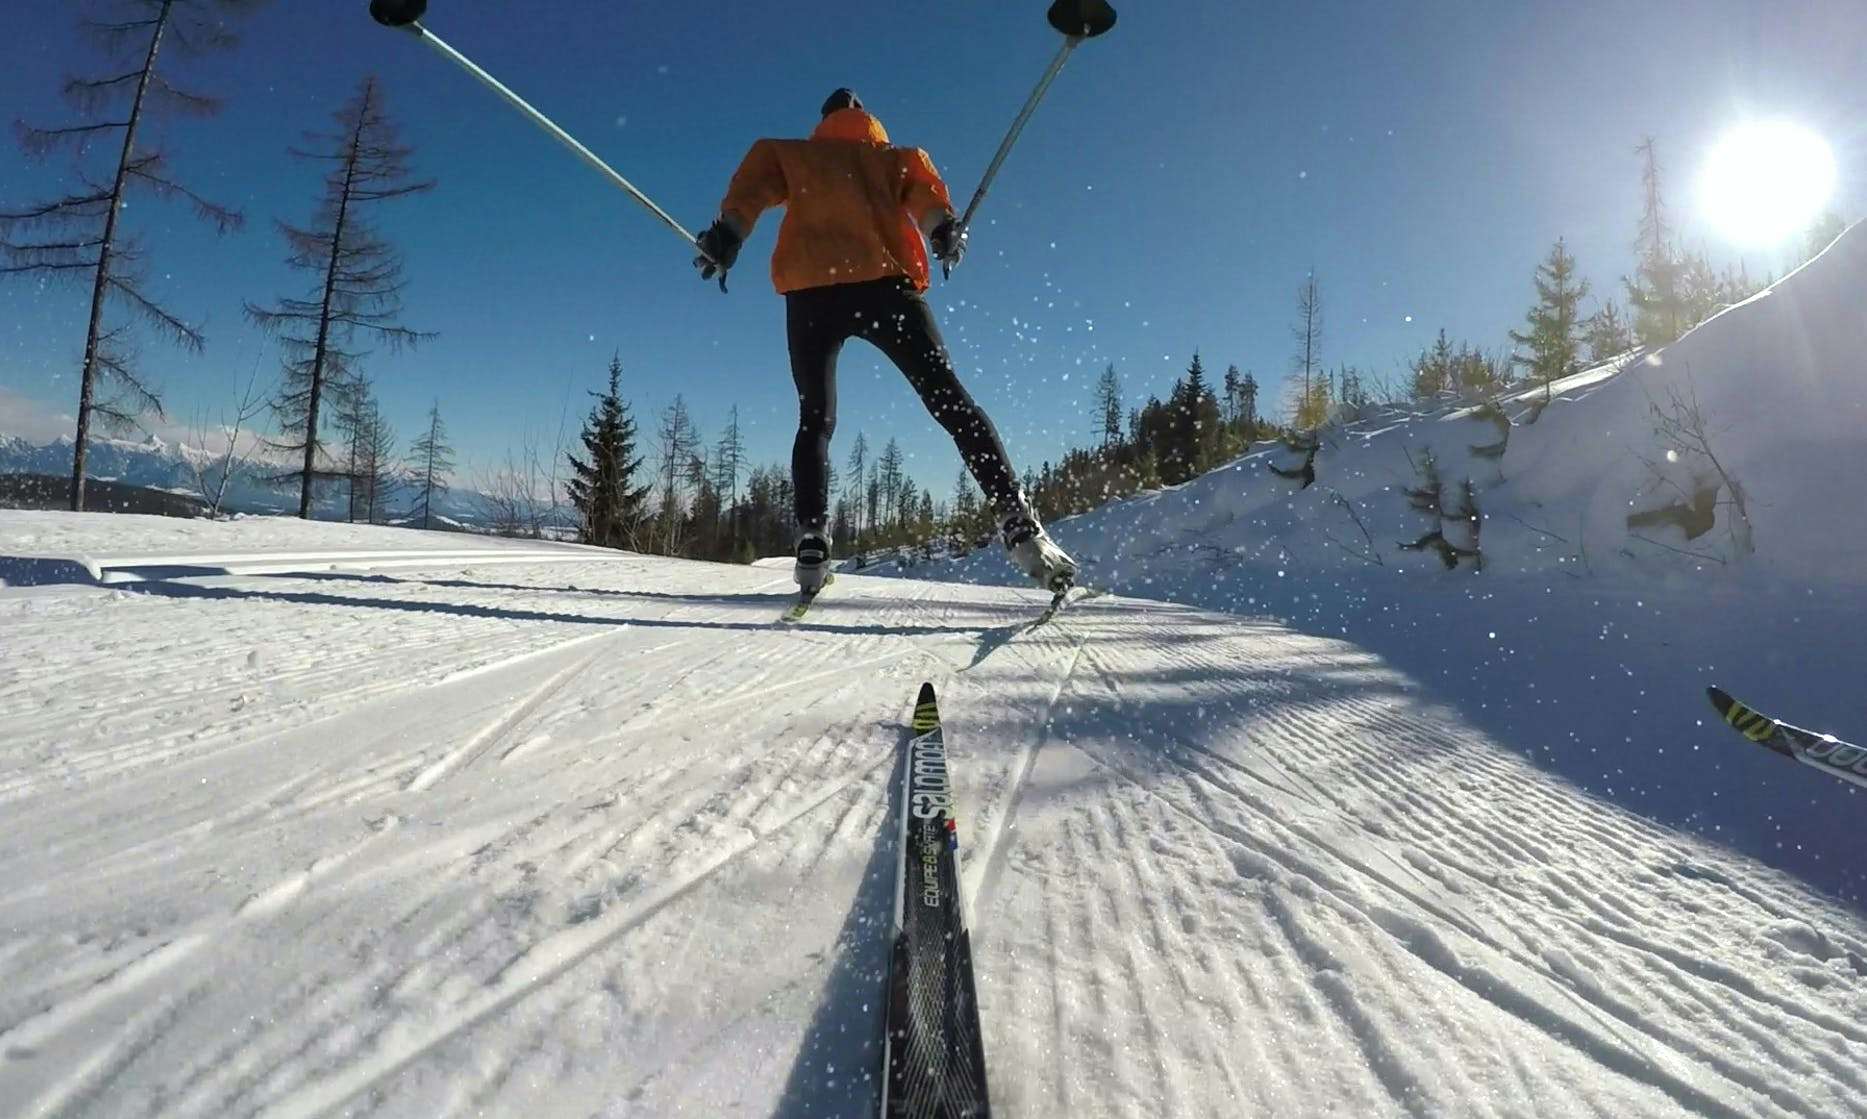 MEC Ambassador Bruce Kirkby skate skiing